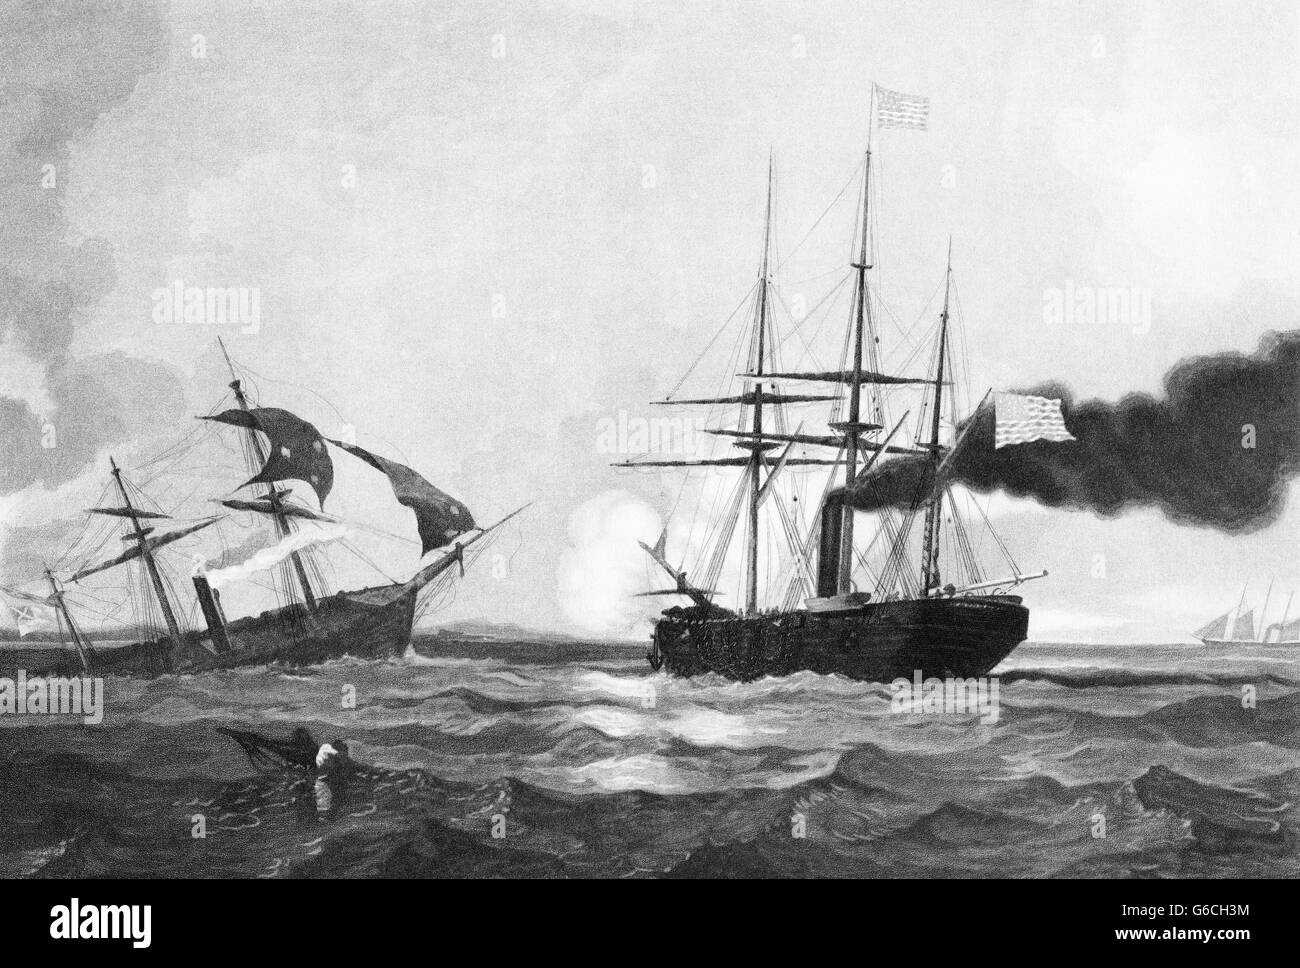 1860 giugno 19 1864 CSS ALABAMA NAUFRAGIO DOPO LA SCONFITTA DA PARTE DELL'UNIONE LA NAVE USS KEARSARGE SUPERSTITE IN PRIMO PIANO CHERBOURG FRANCIA Foto Stock